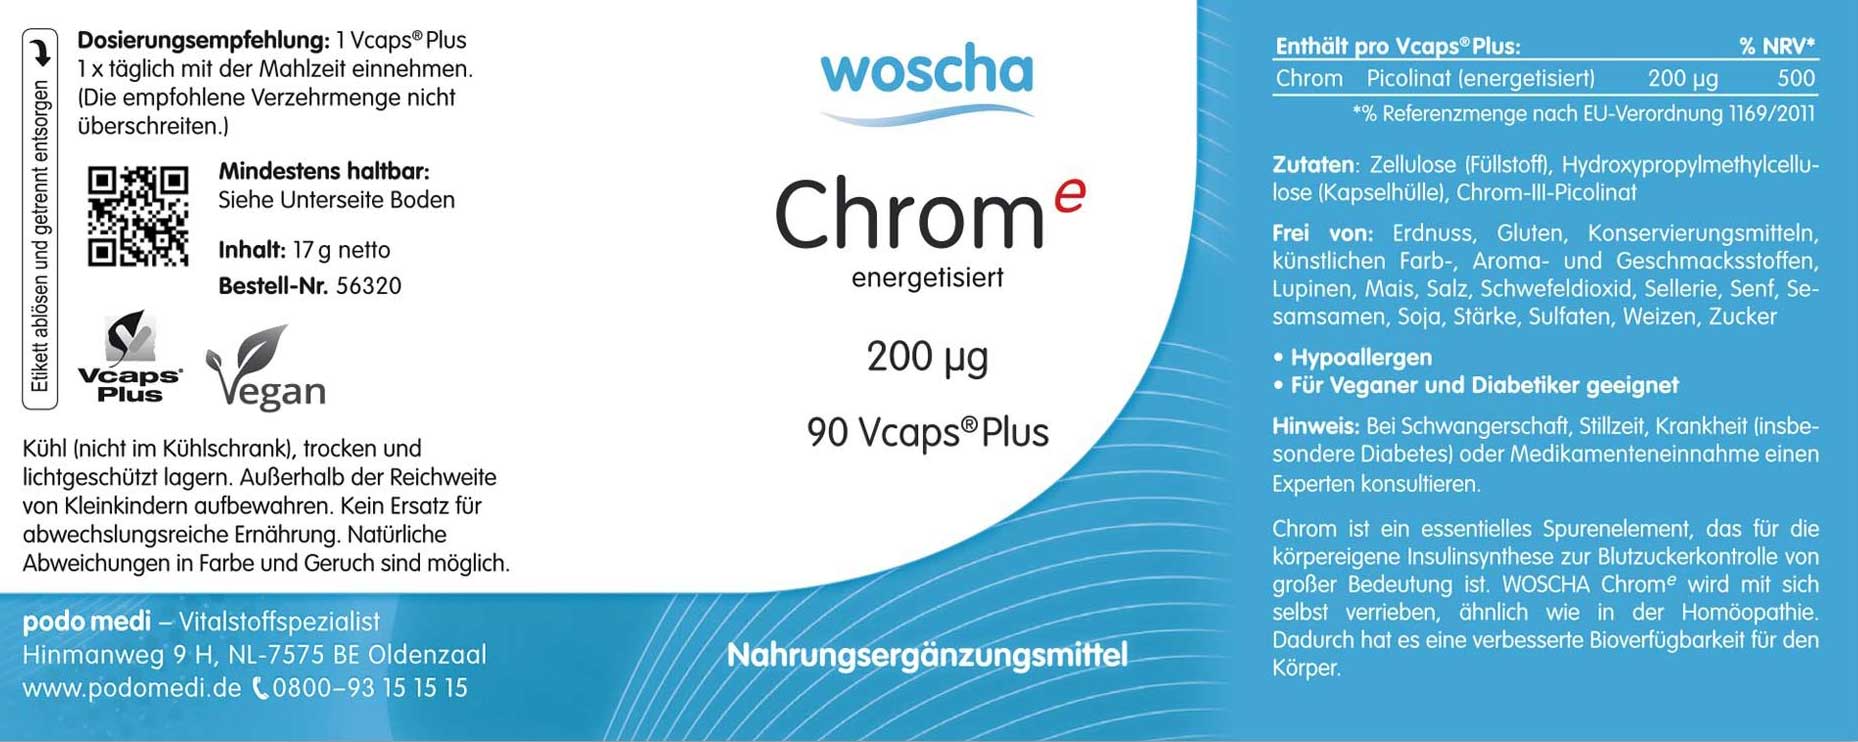 Woscha Chrom Energetisiert von podo medi beinhaltet 90 Kapseln Etikett